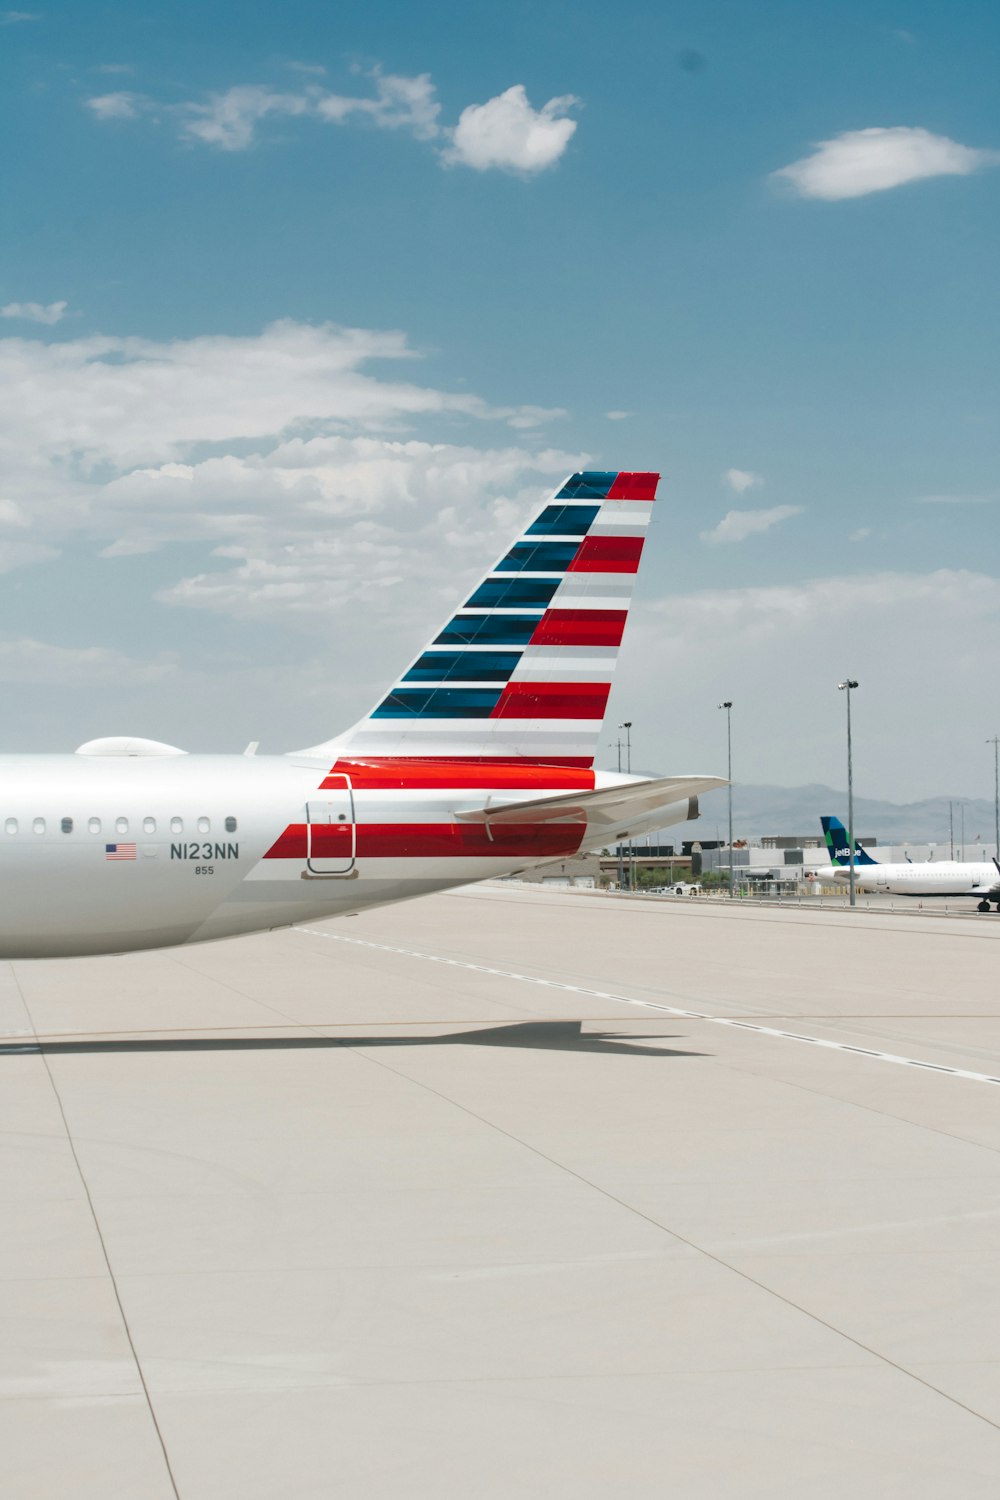 Avion de ligne blanc et rouge sur l’aéroport pendant la journée